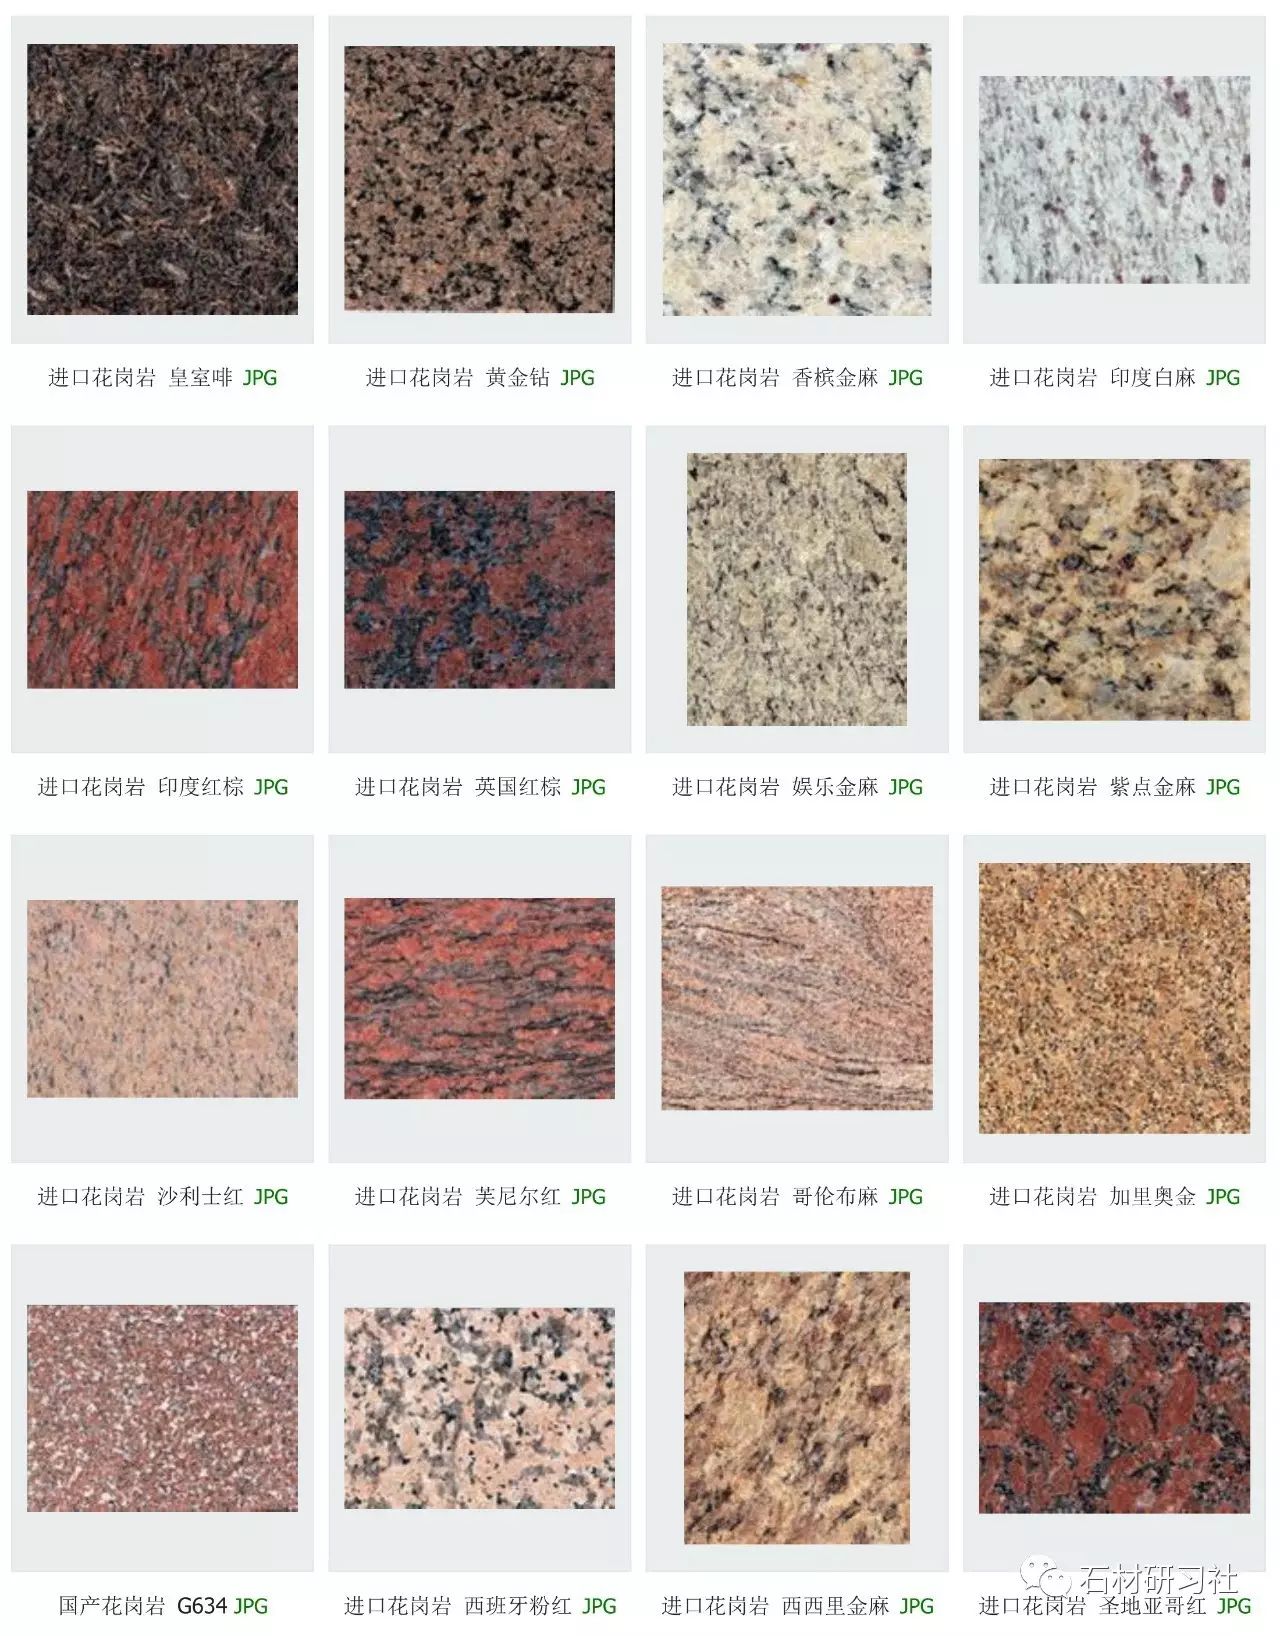 花岗岩是最常见的石材种类,全世界的花岗岩品种估计得有数千种